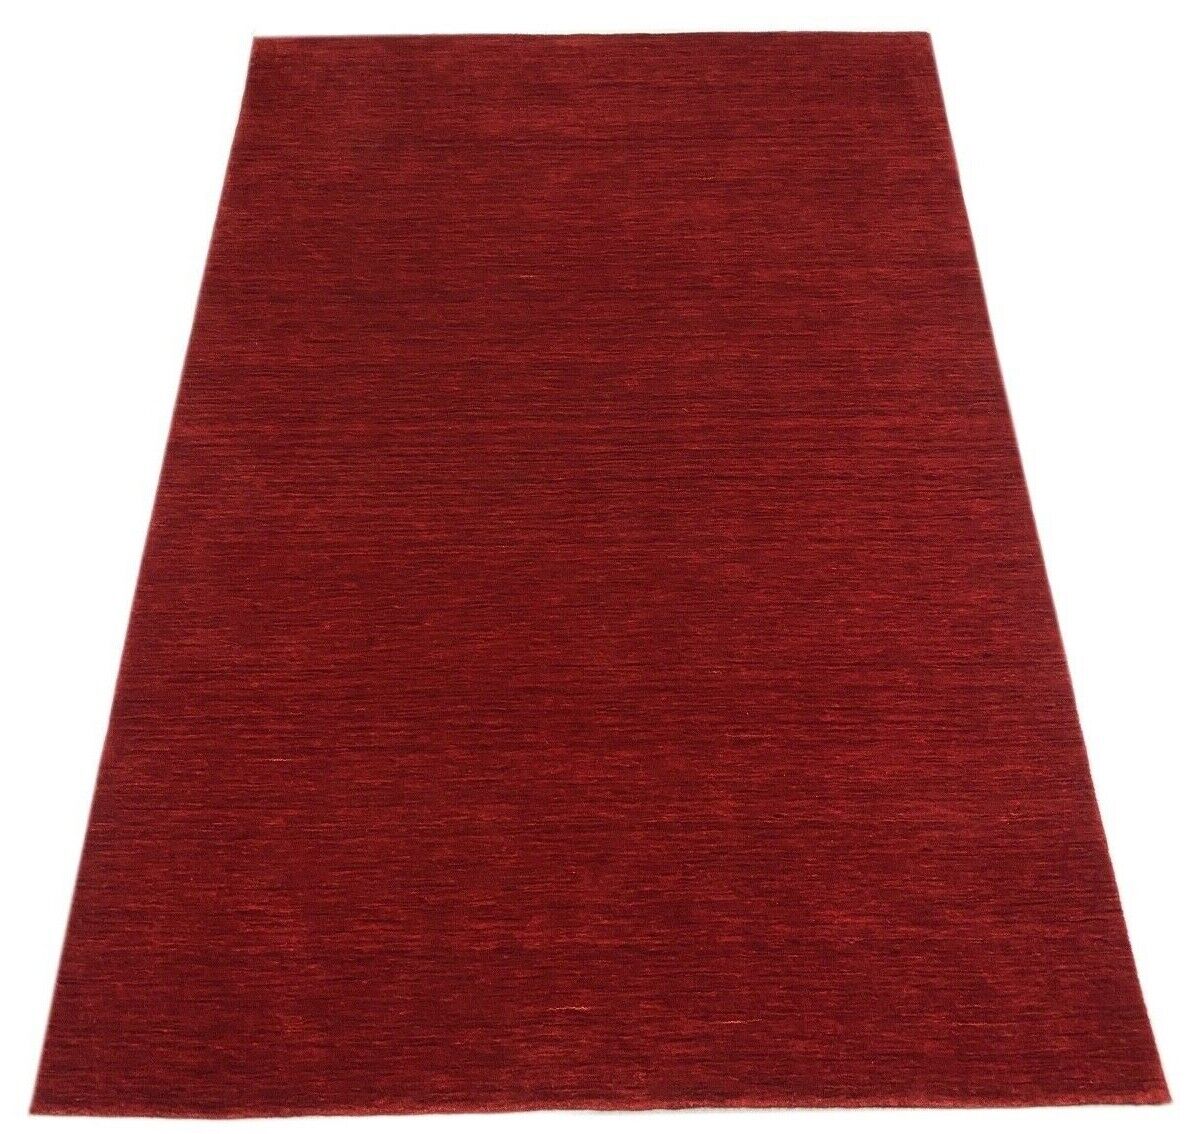 Rot Teppich 100% Wolle Gabbeh 170x240 cm Handgewebt einfarbig gefärbt WR136